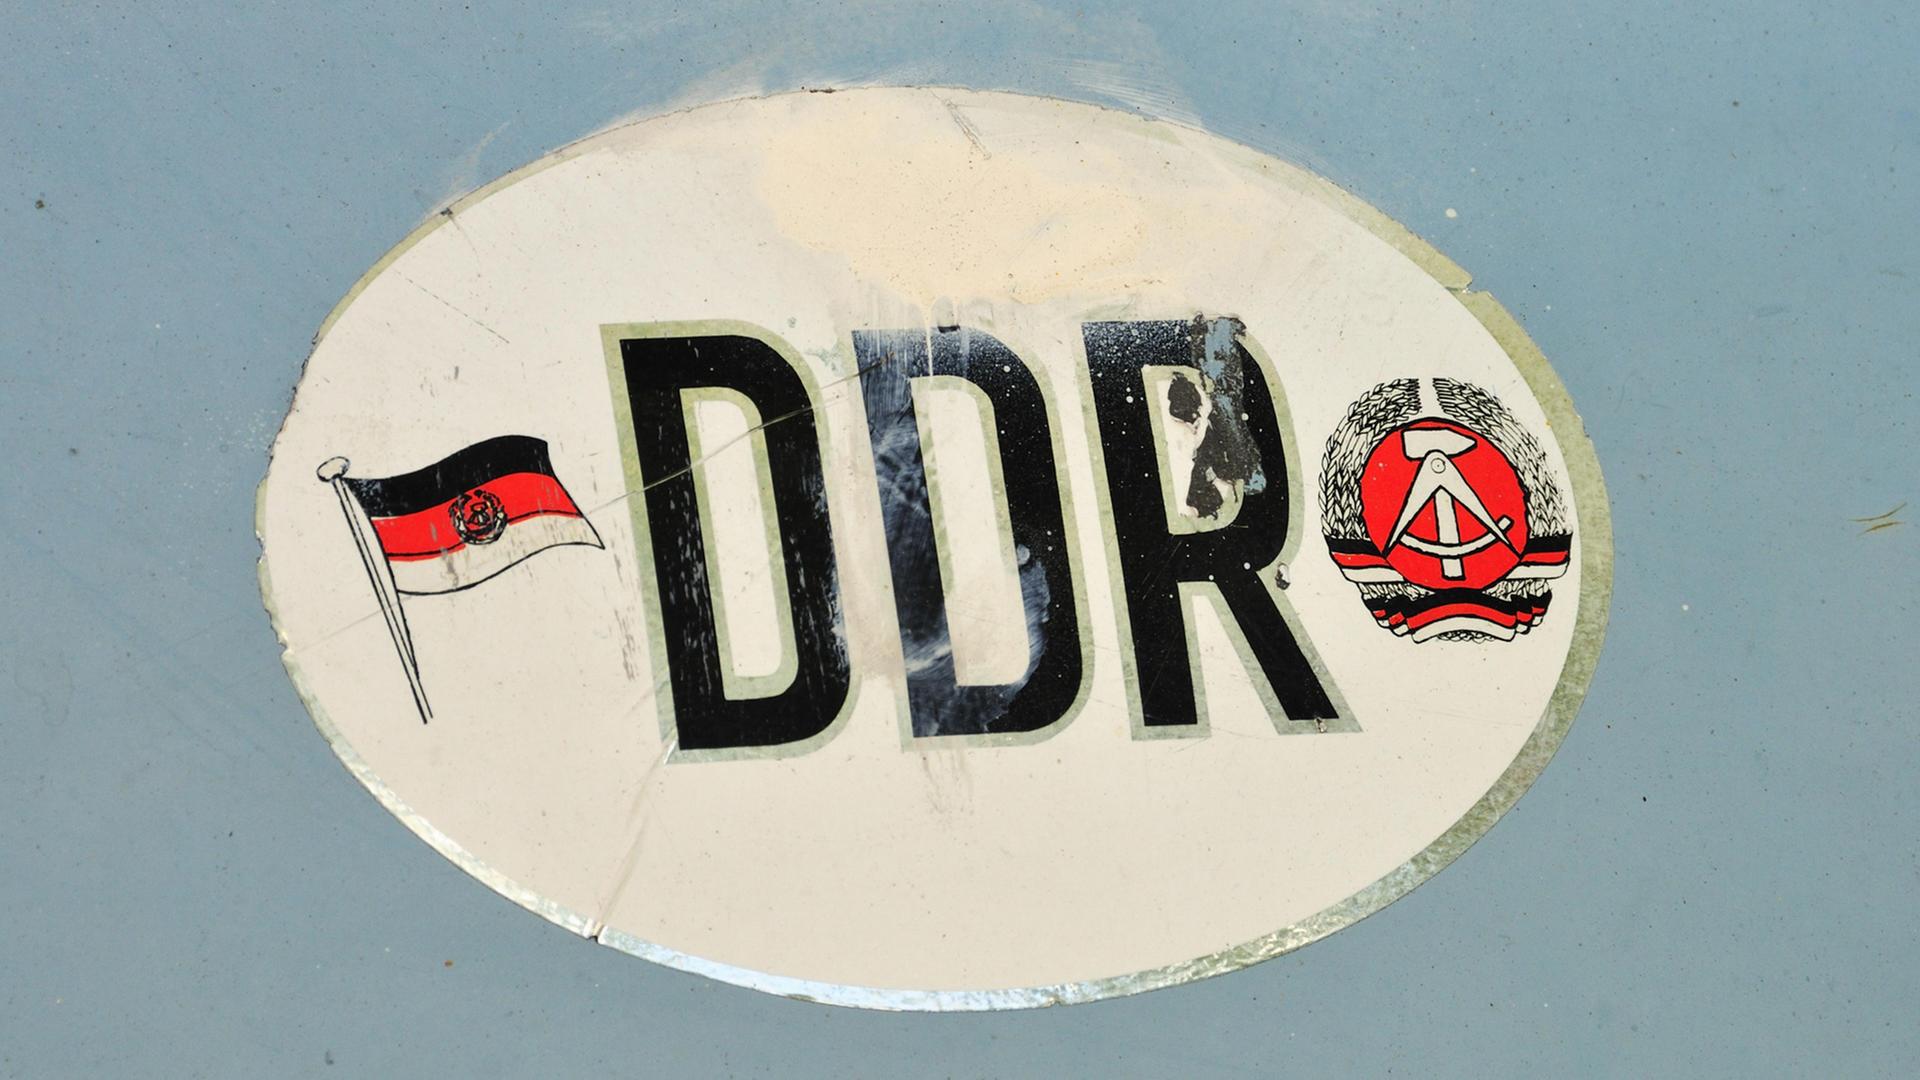 DDR-Aufkleber, alt und ausgebleicht